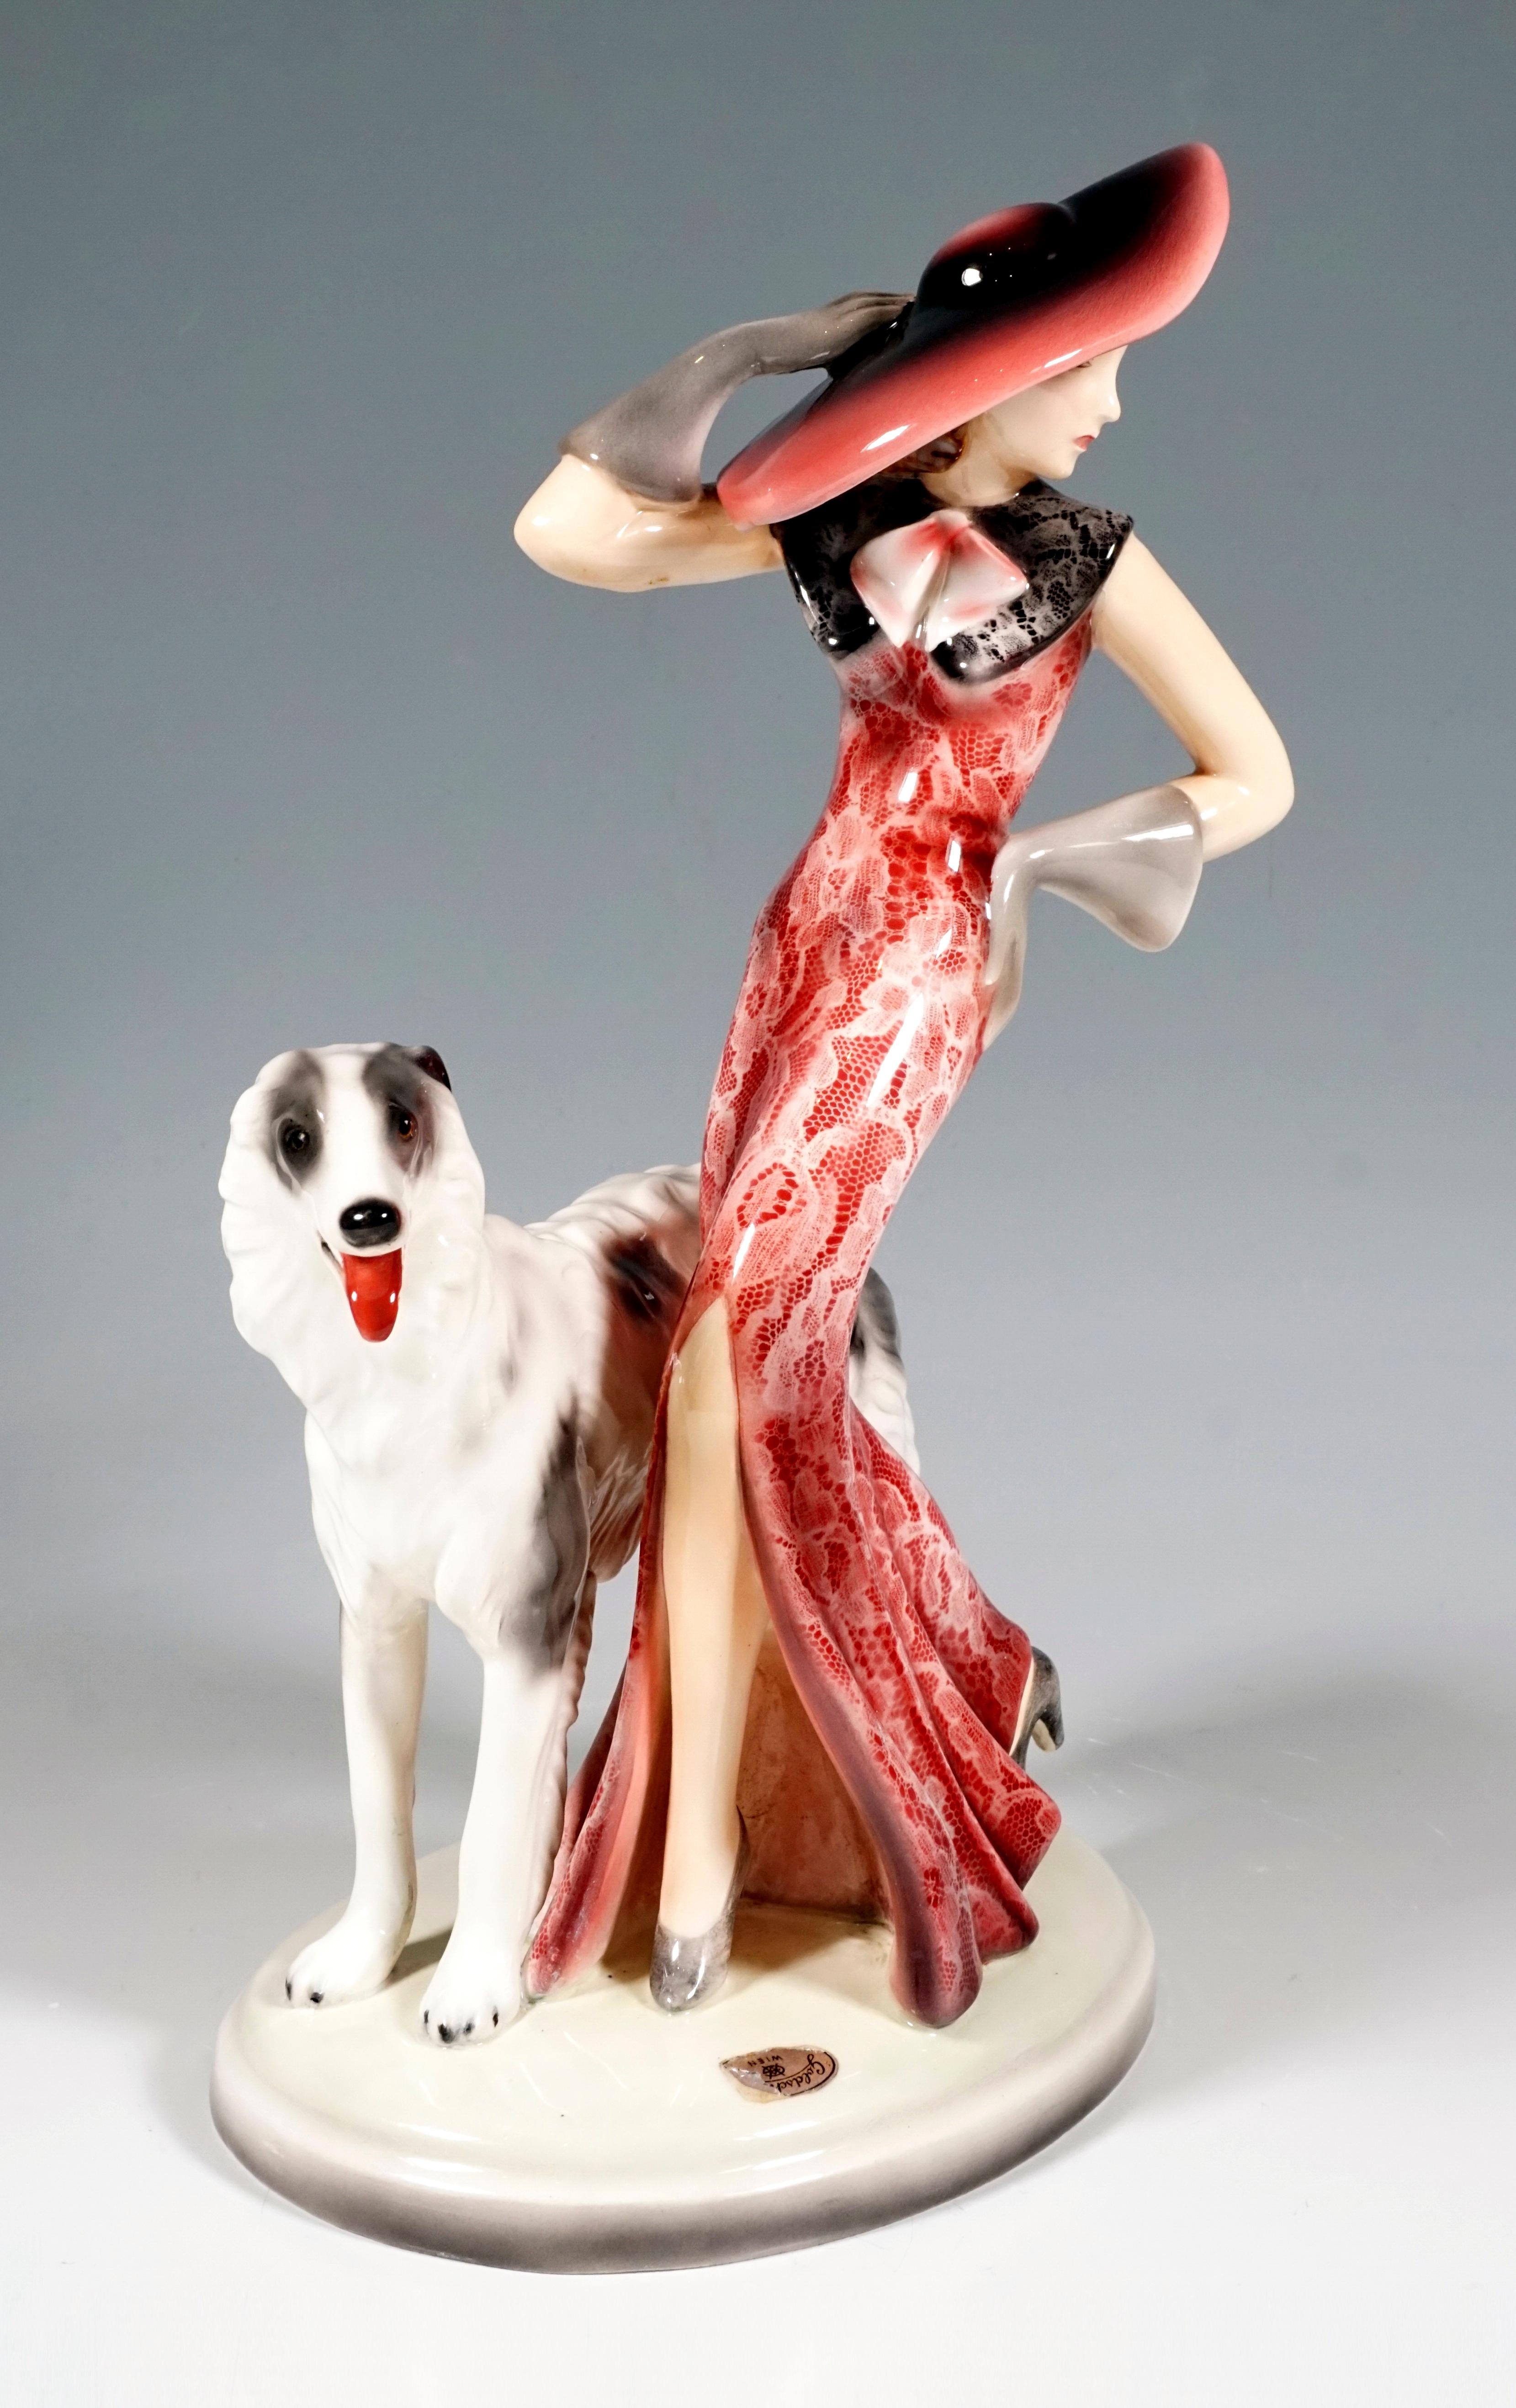 Représentation d'une dame élégante vêtue d'une longue robe rouge moulante avec un motif de dentelle blanche et une partie de jupe large et flottante avec une fente haute sur le devant, un large col en dentelle noire et un chapeau à large bord,